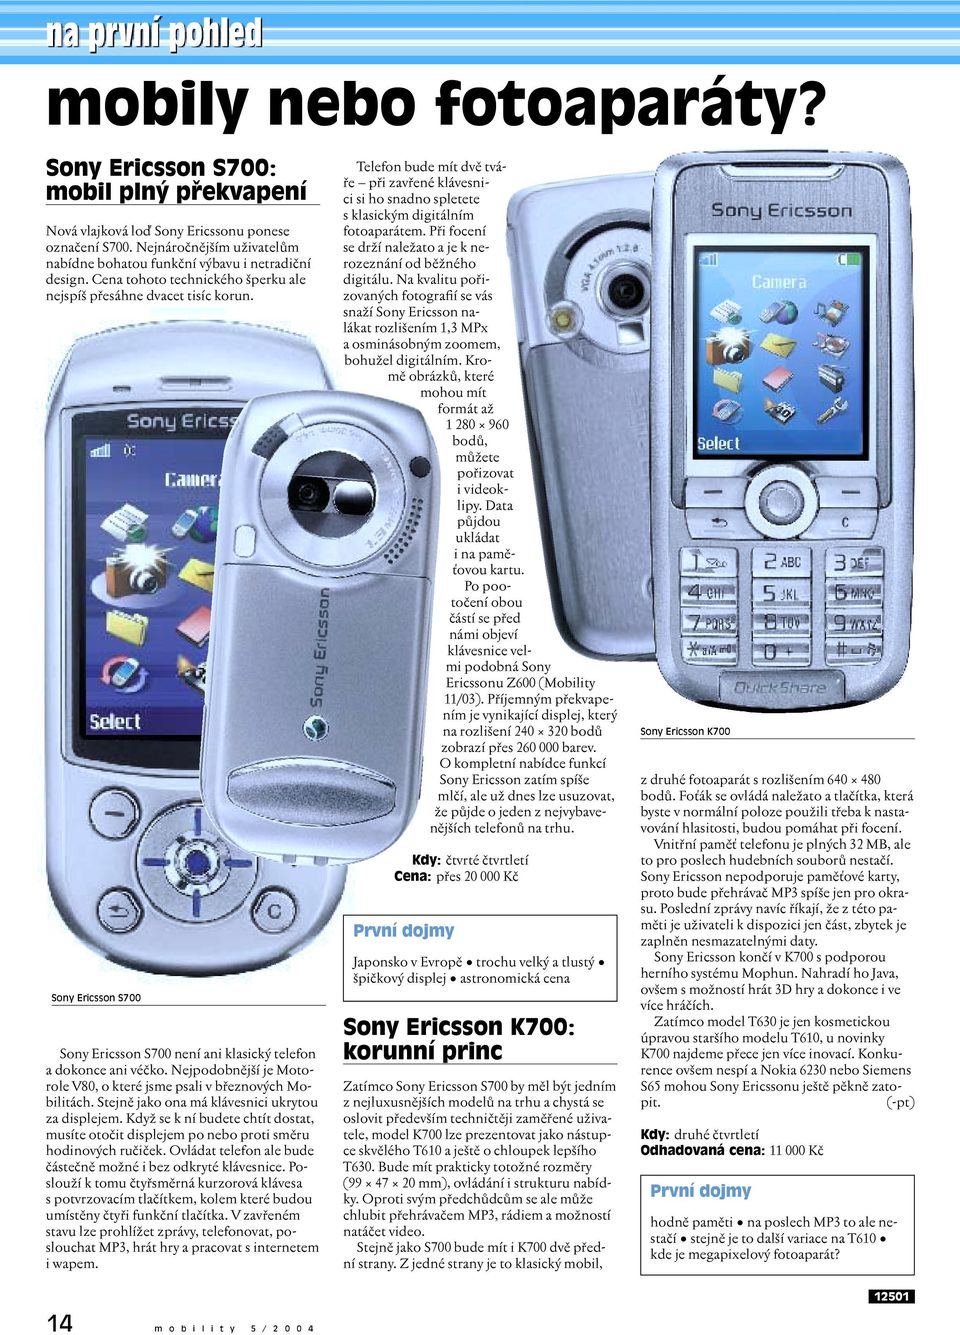 Sony Ericsson S700 Sony Ericsson S700 není ani klasický telefon a dokonce ani véčko. Nejpodobnější je Motorole V80, o které jsme psali v březnových Mobilitách.